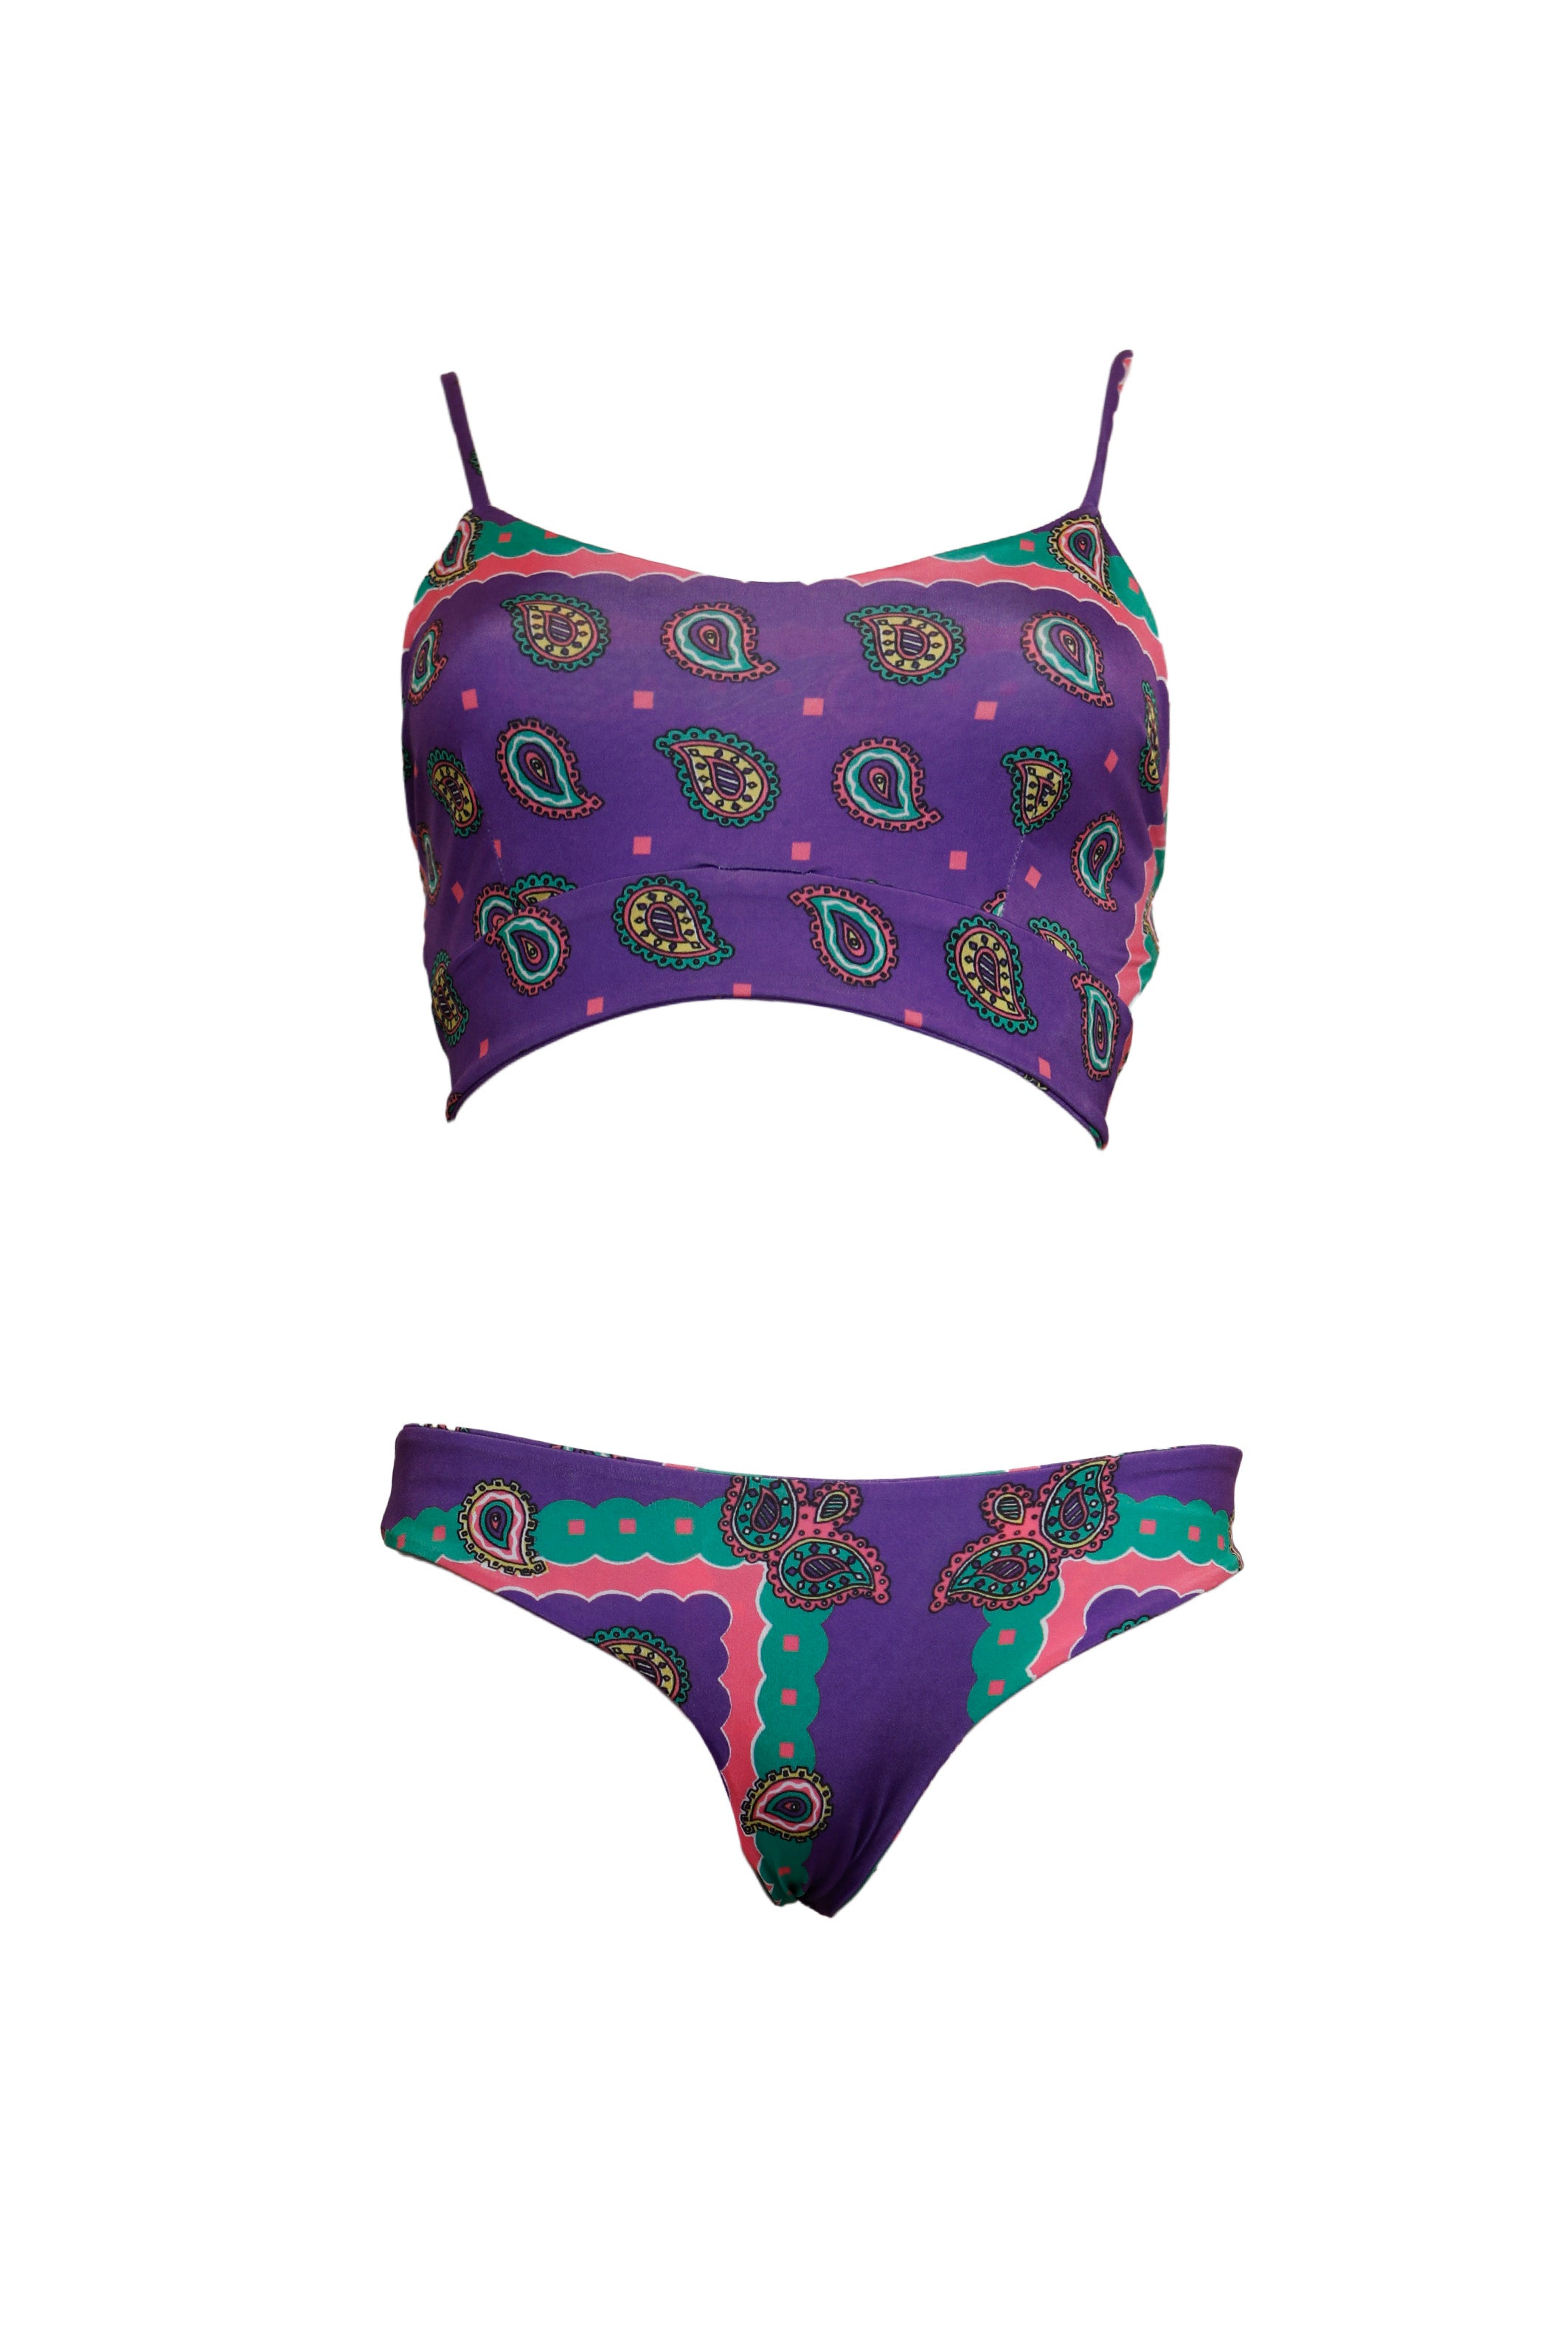 CECILIA - two-piece swimsuit in purple Ibiza bandana print lycra